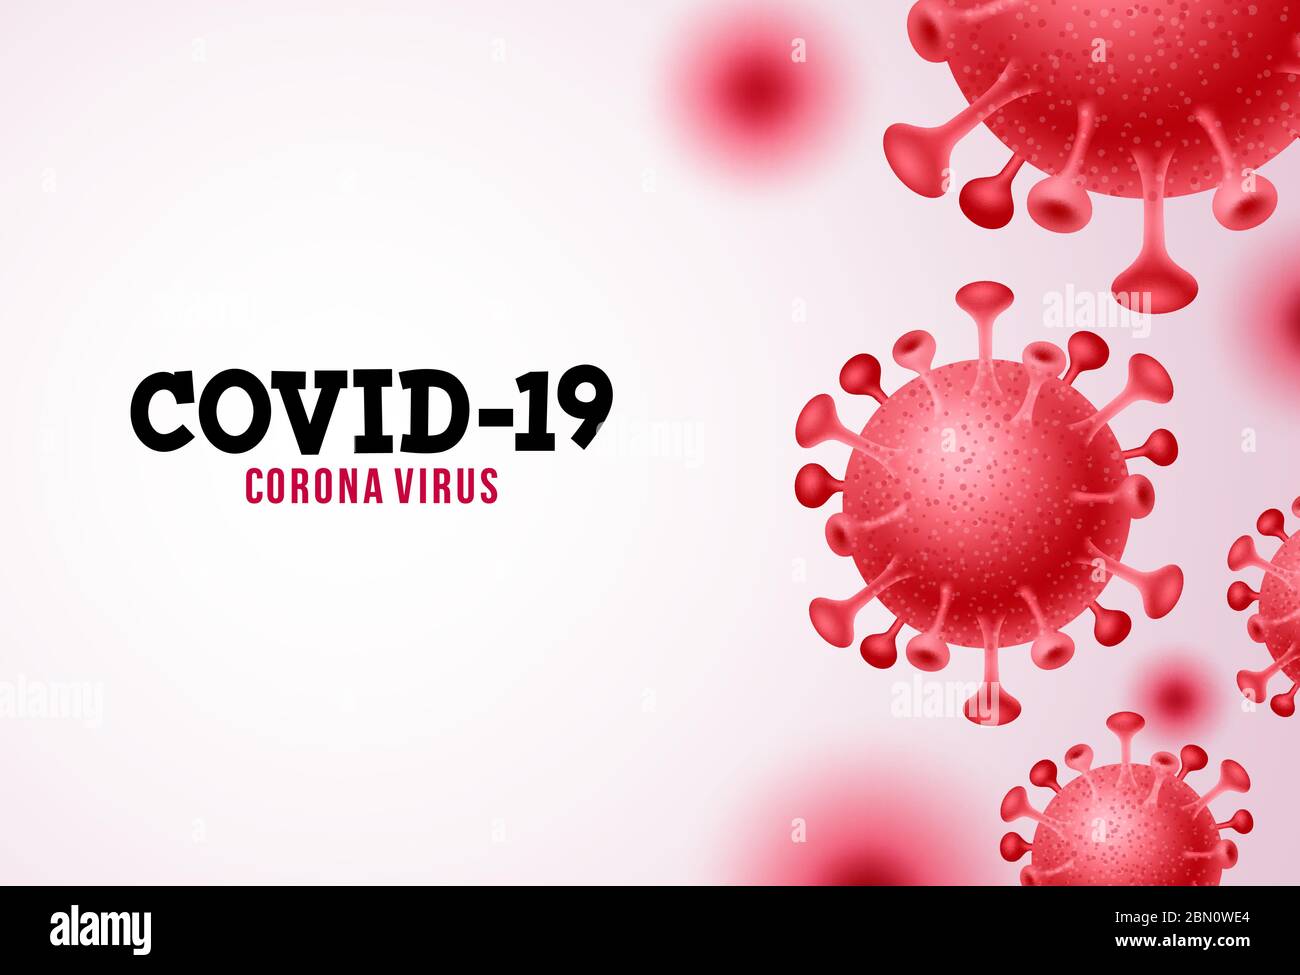 Covid-19 Coronavirus Vektor Hintergrund. Covid-19 Corona-Virus Text im weißen Raum mit rotem neuartigem Corona-Virus. Vektorgrafik. Stock Vektor